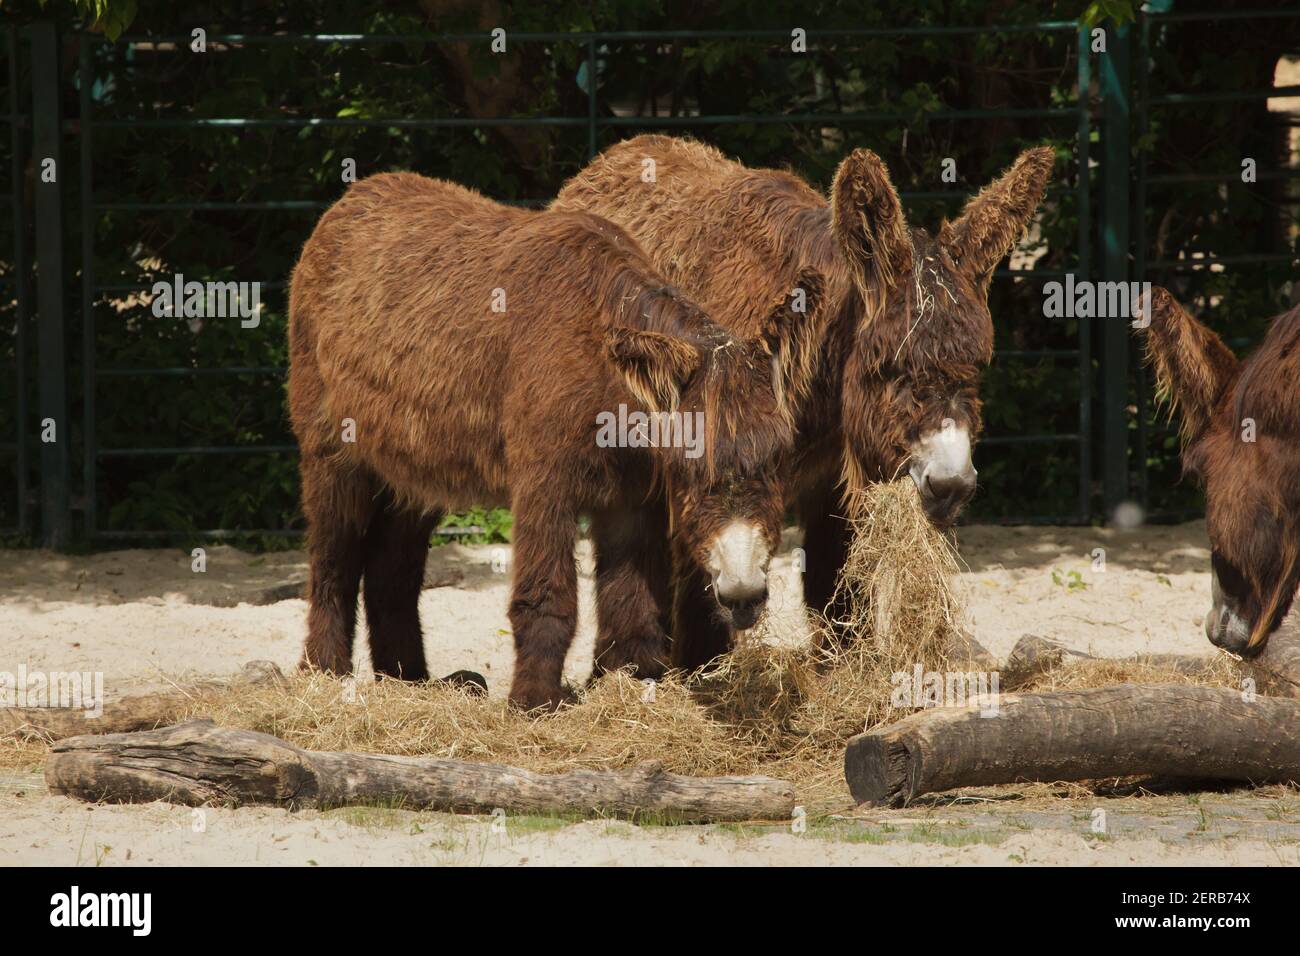 Poitou donkey (Equus asinus asinus), also known as the Poitevin donkey. Stock Photo